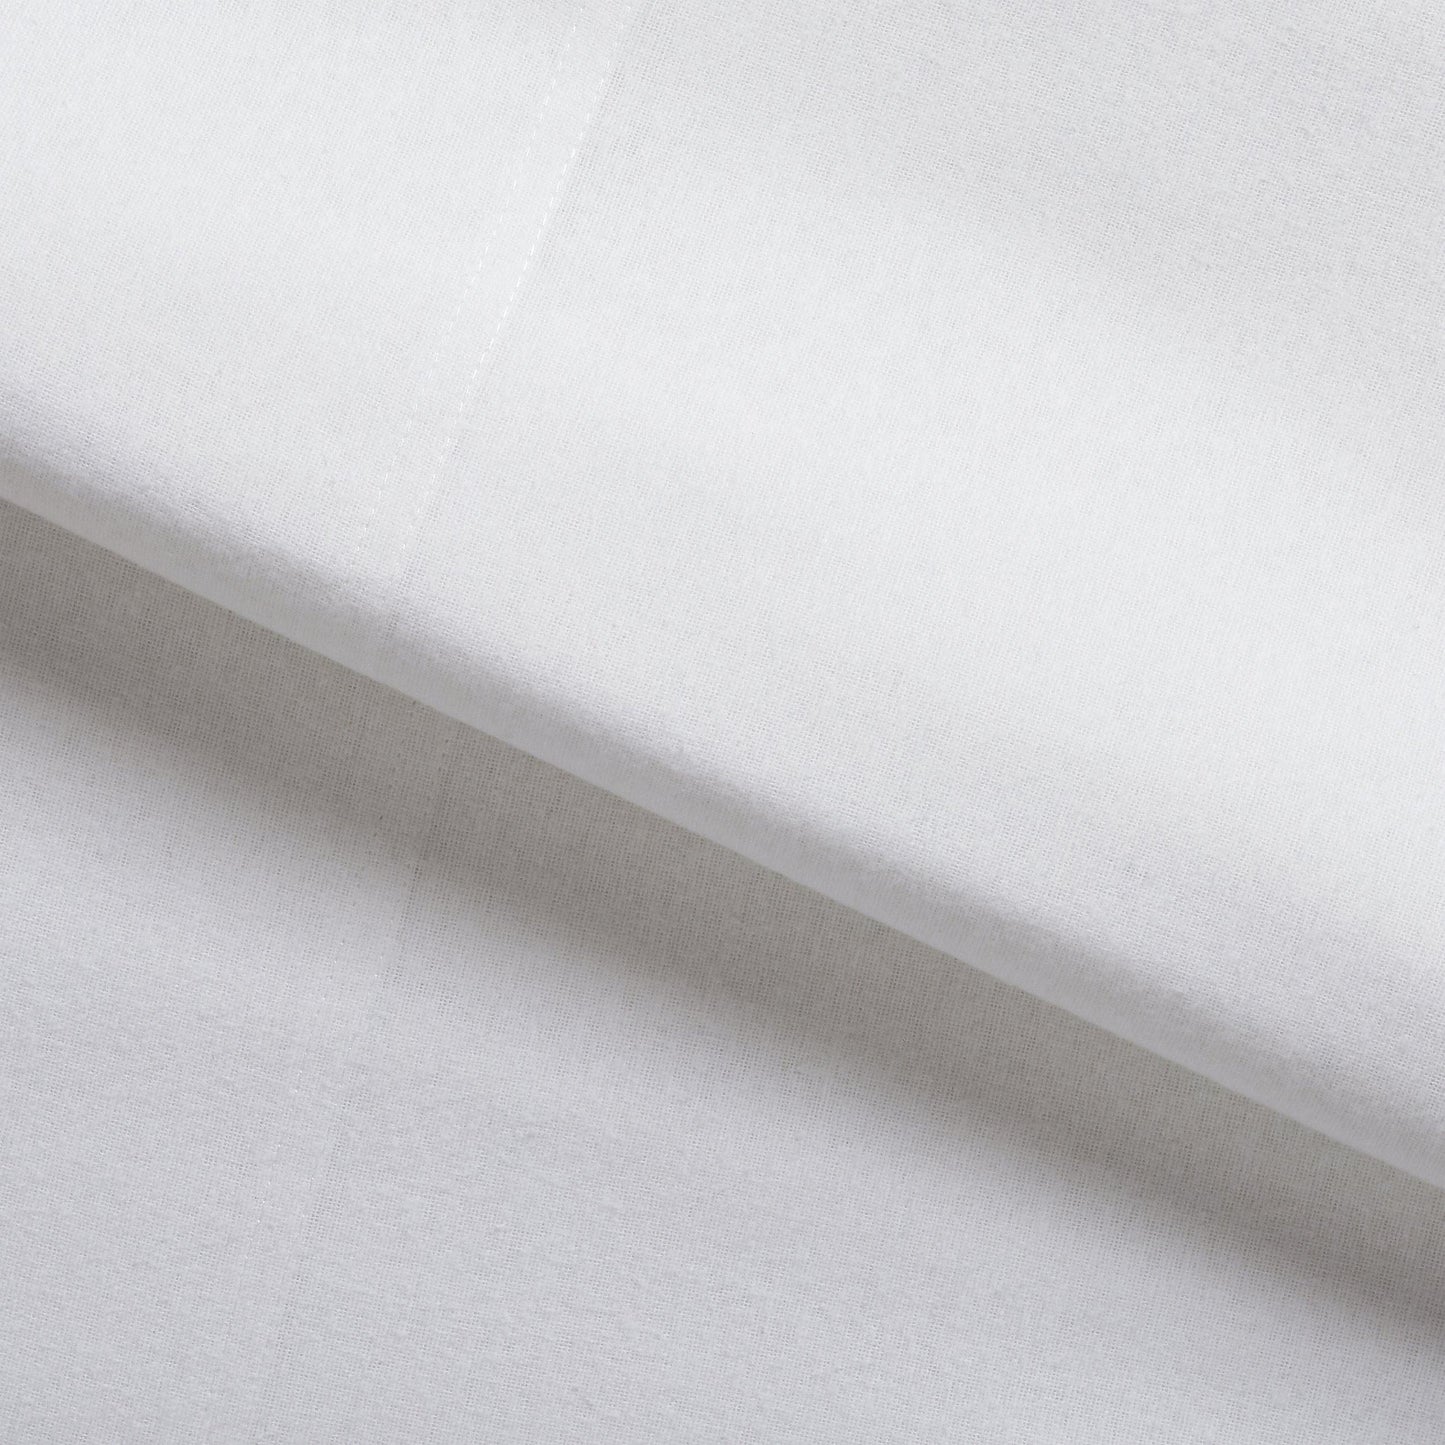 Premium Solid Fleur-de-Lis Cotton Flannel Pillowcase Set by Superior FredCo